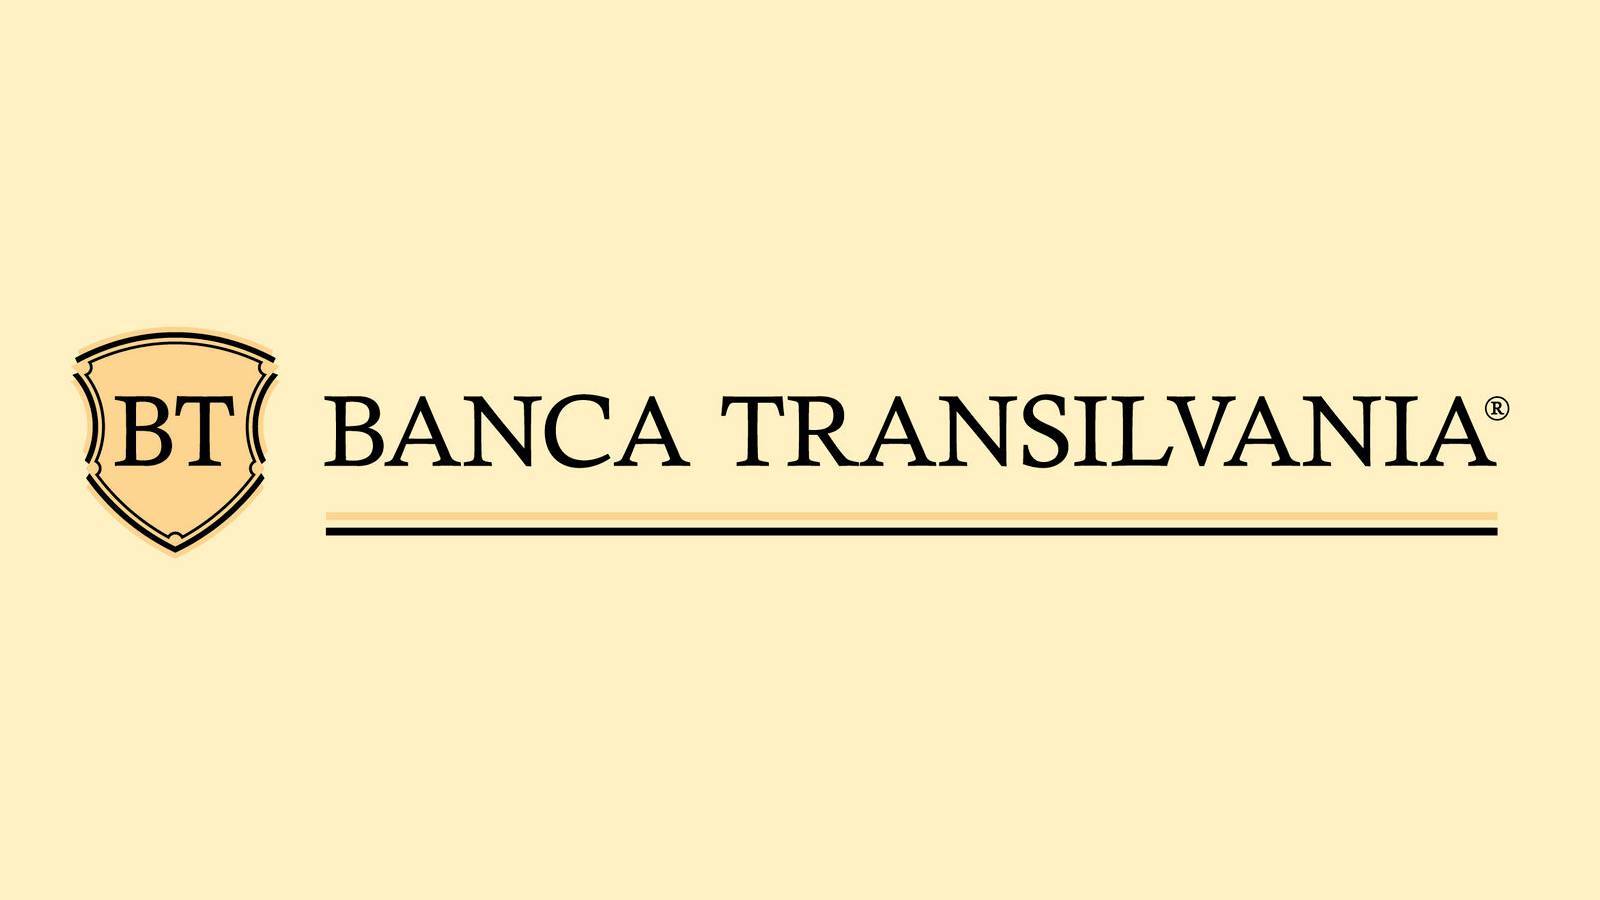 BANCA Transilvania Officiella åtgärder SINASTE ÖGNET Miljontals rumänska kunder